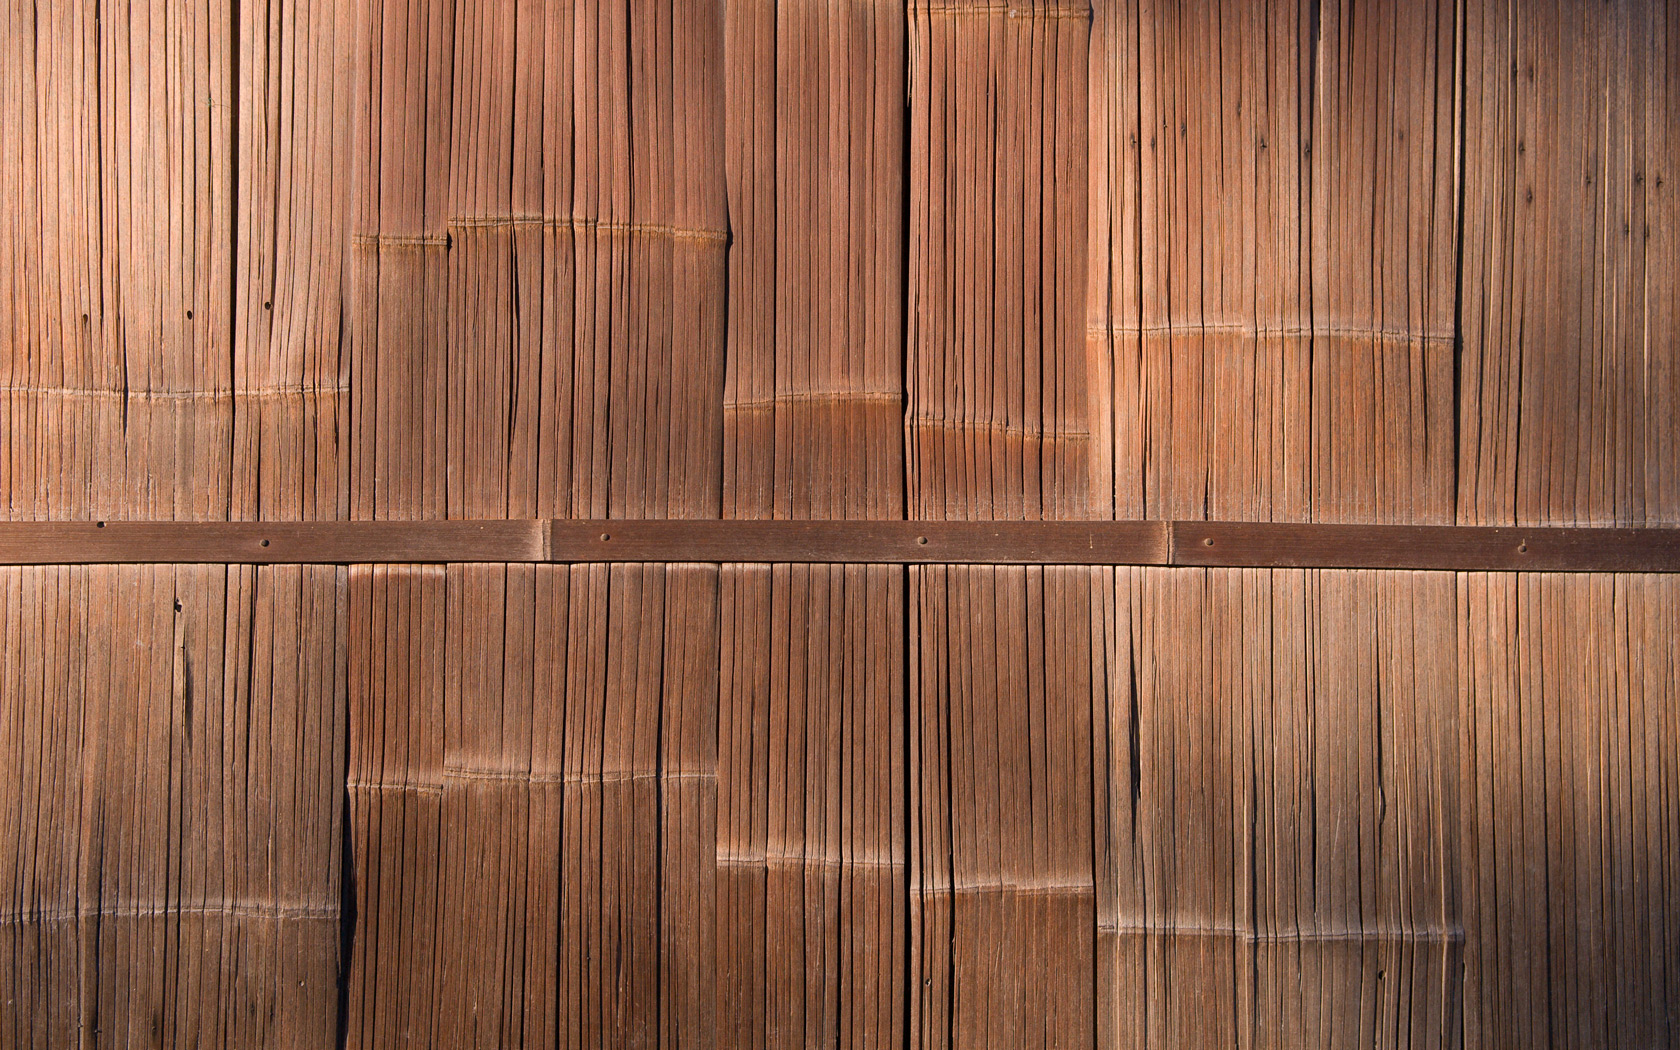 壁の竹の壁紙,木材,広葉樹,ウッドステイン,ウッドフローリング,床